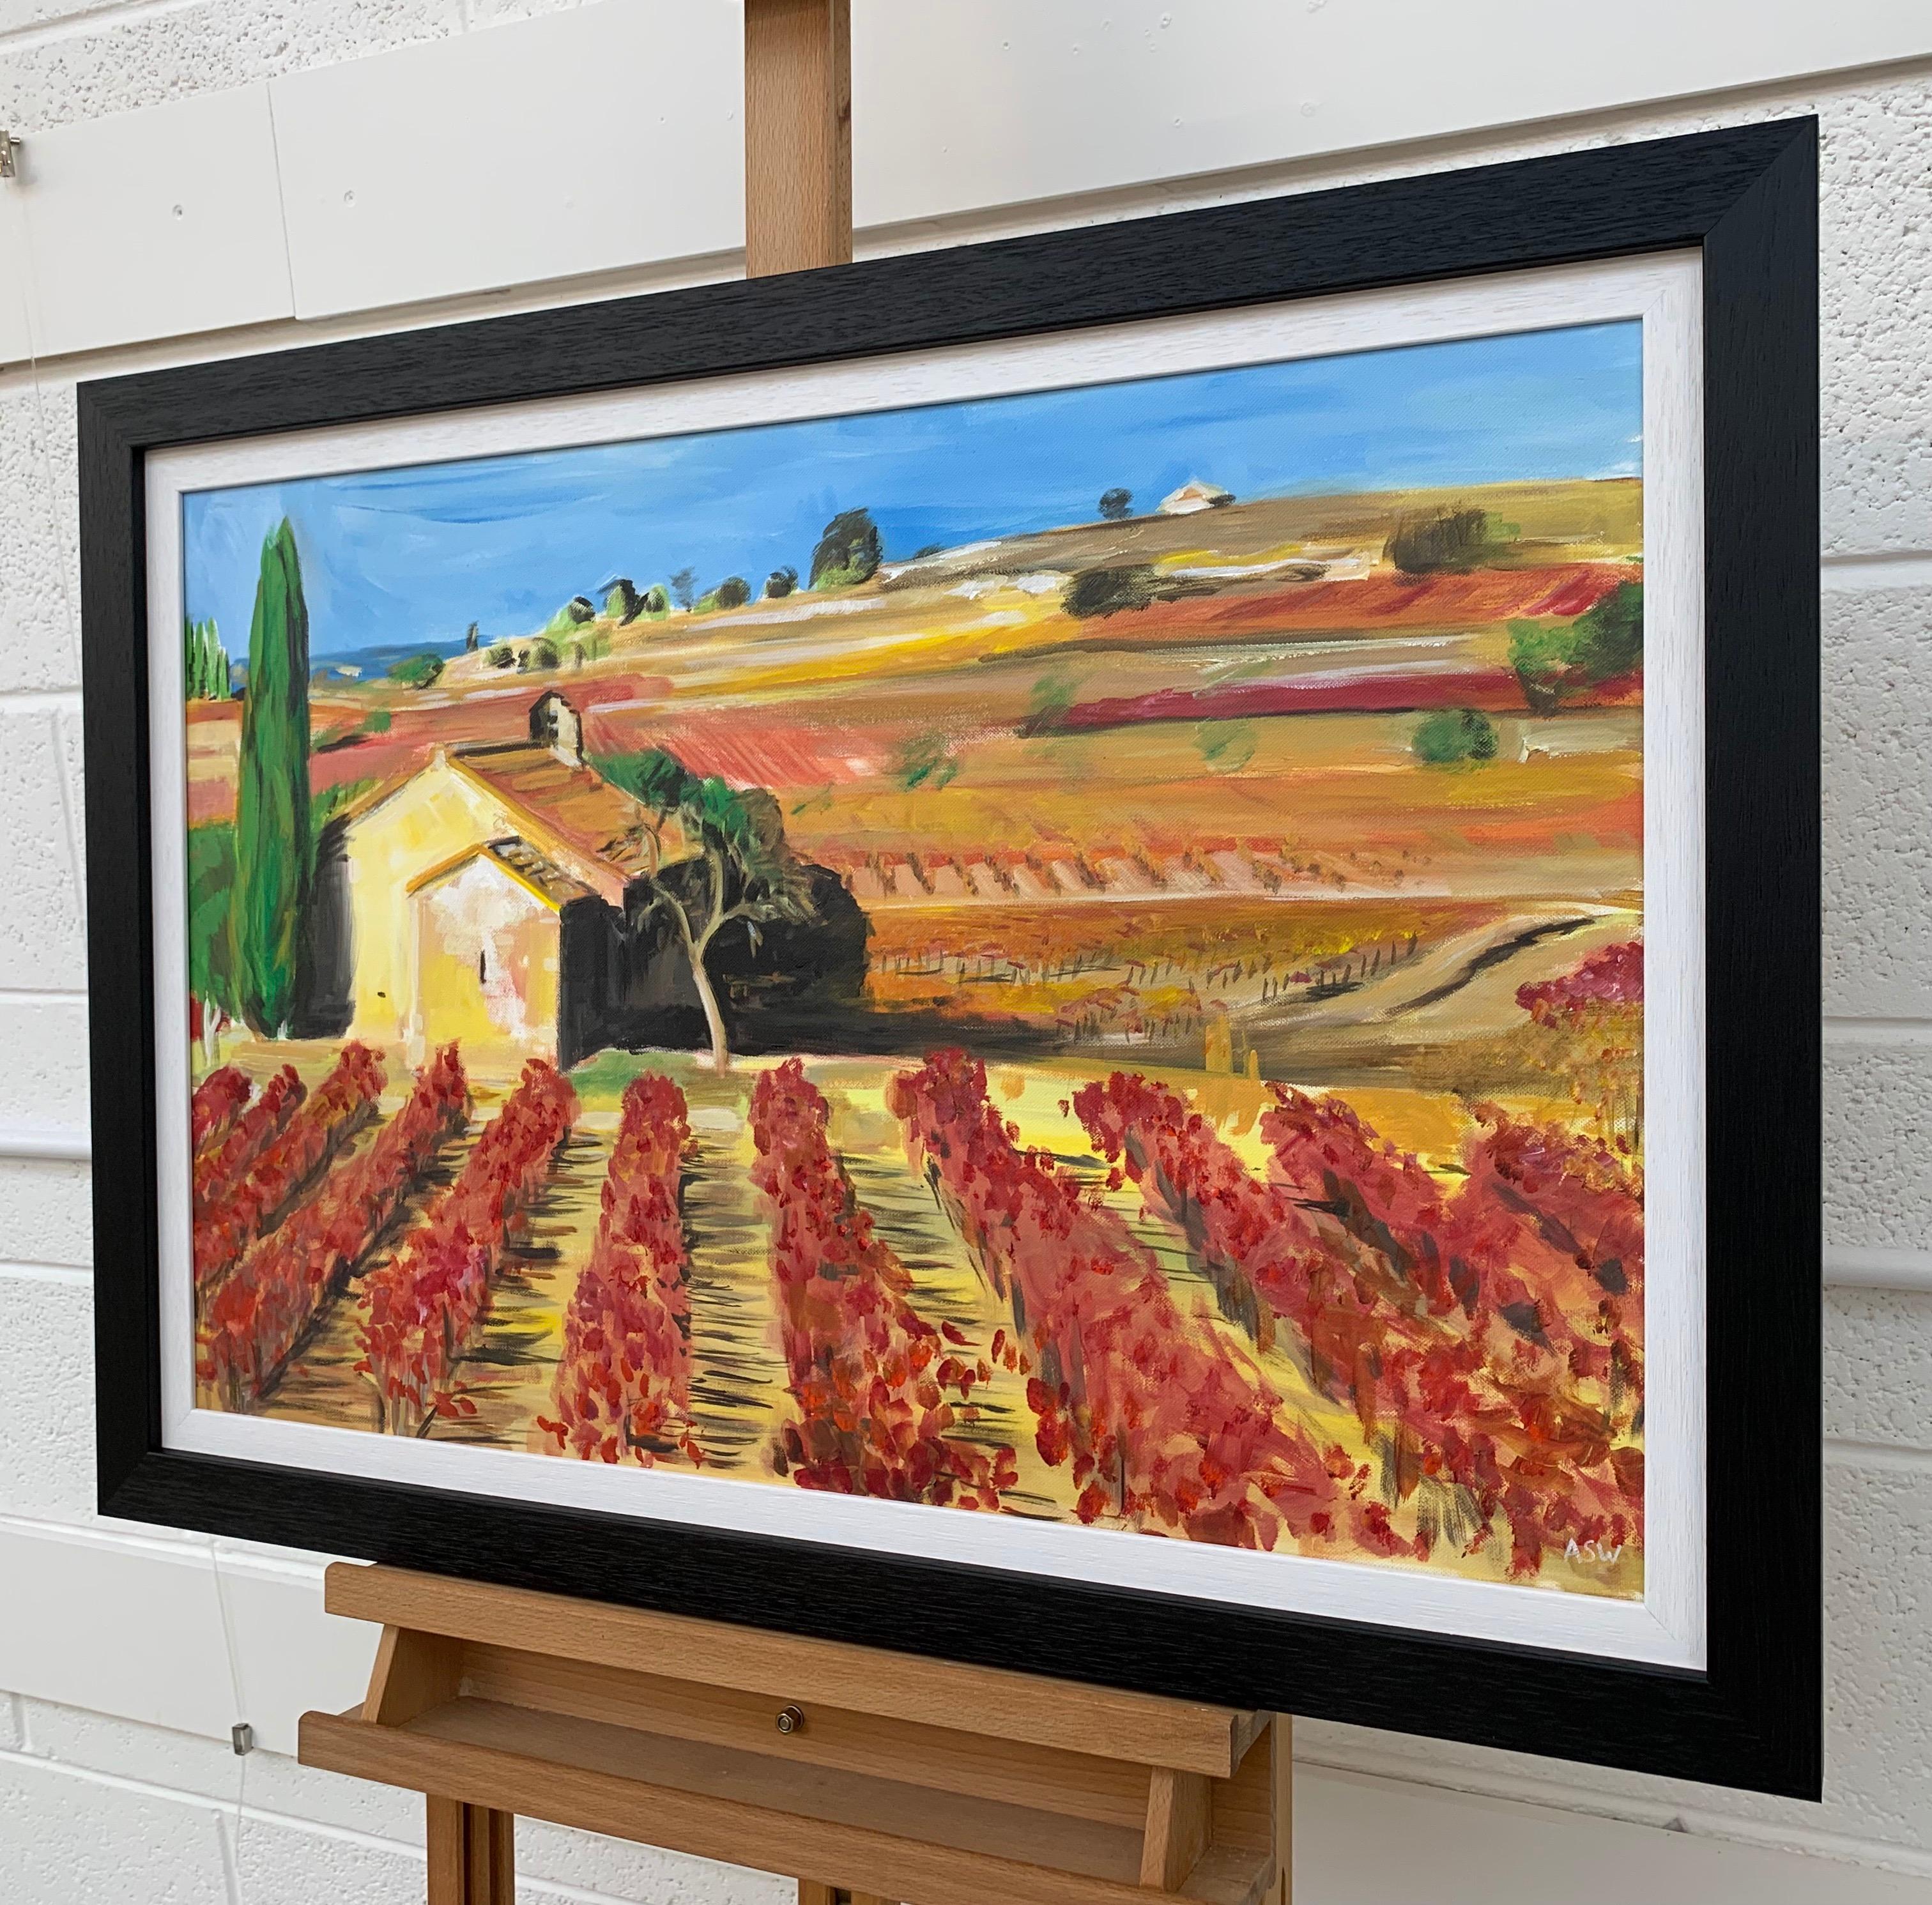 Originalgemälde eines Weinbergs in der Weinbauregion Bordeaux, Frankreich, von der führenden britischen Künstlerin für zeitgenössische Landschaftsmalerei, Angela Wakefield. Im Jahr 2012 begann Angela mit ihrer europäischen Serie, die sich zunächst